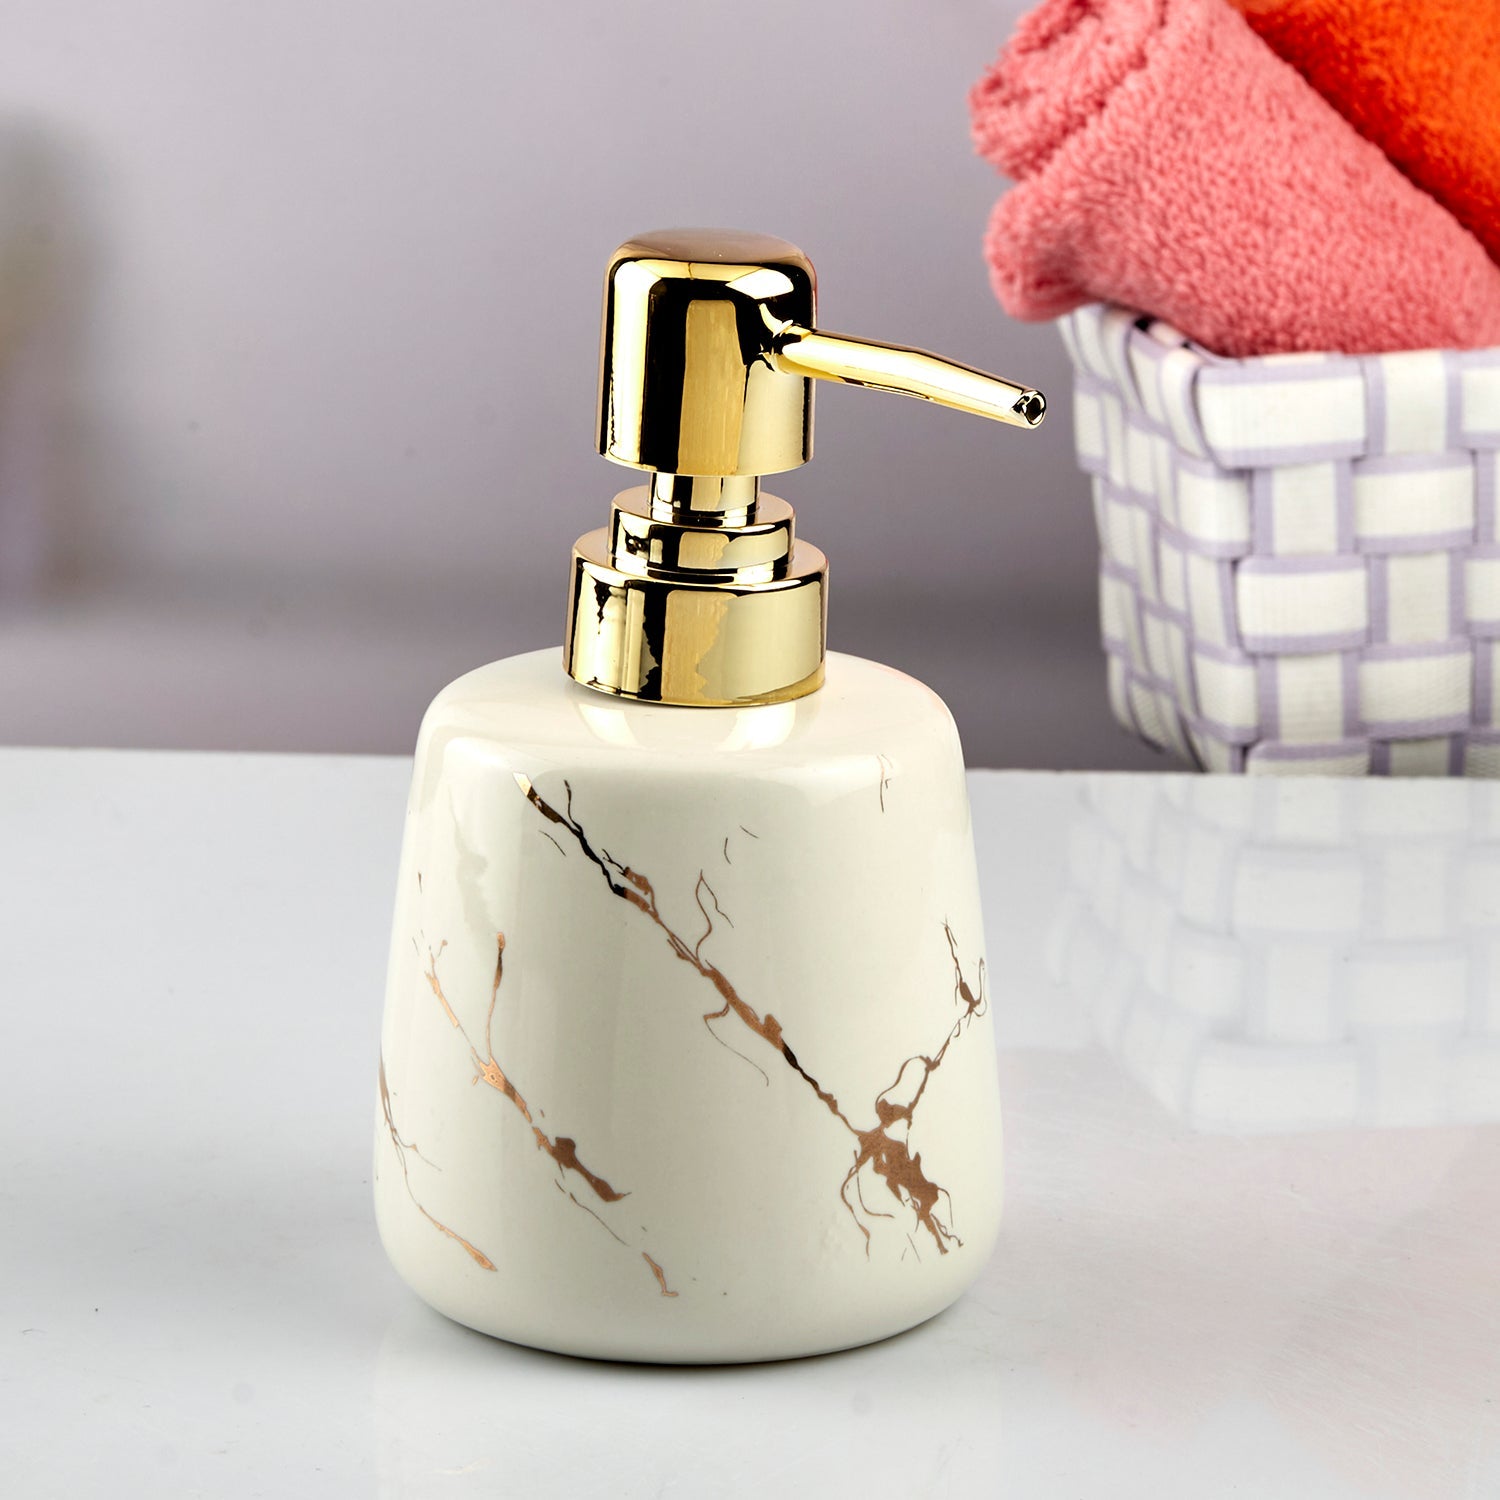 Ceramic Soap Dispenser liquid handwash pump for Bathroom, Set of 1, White (10727)